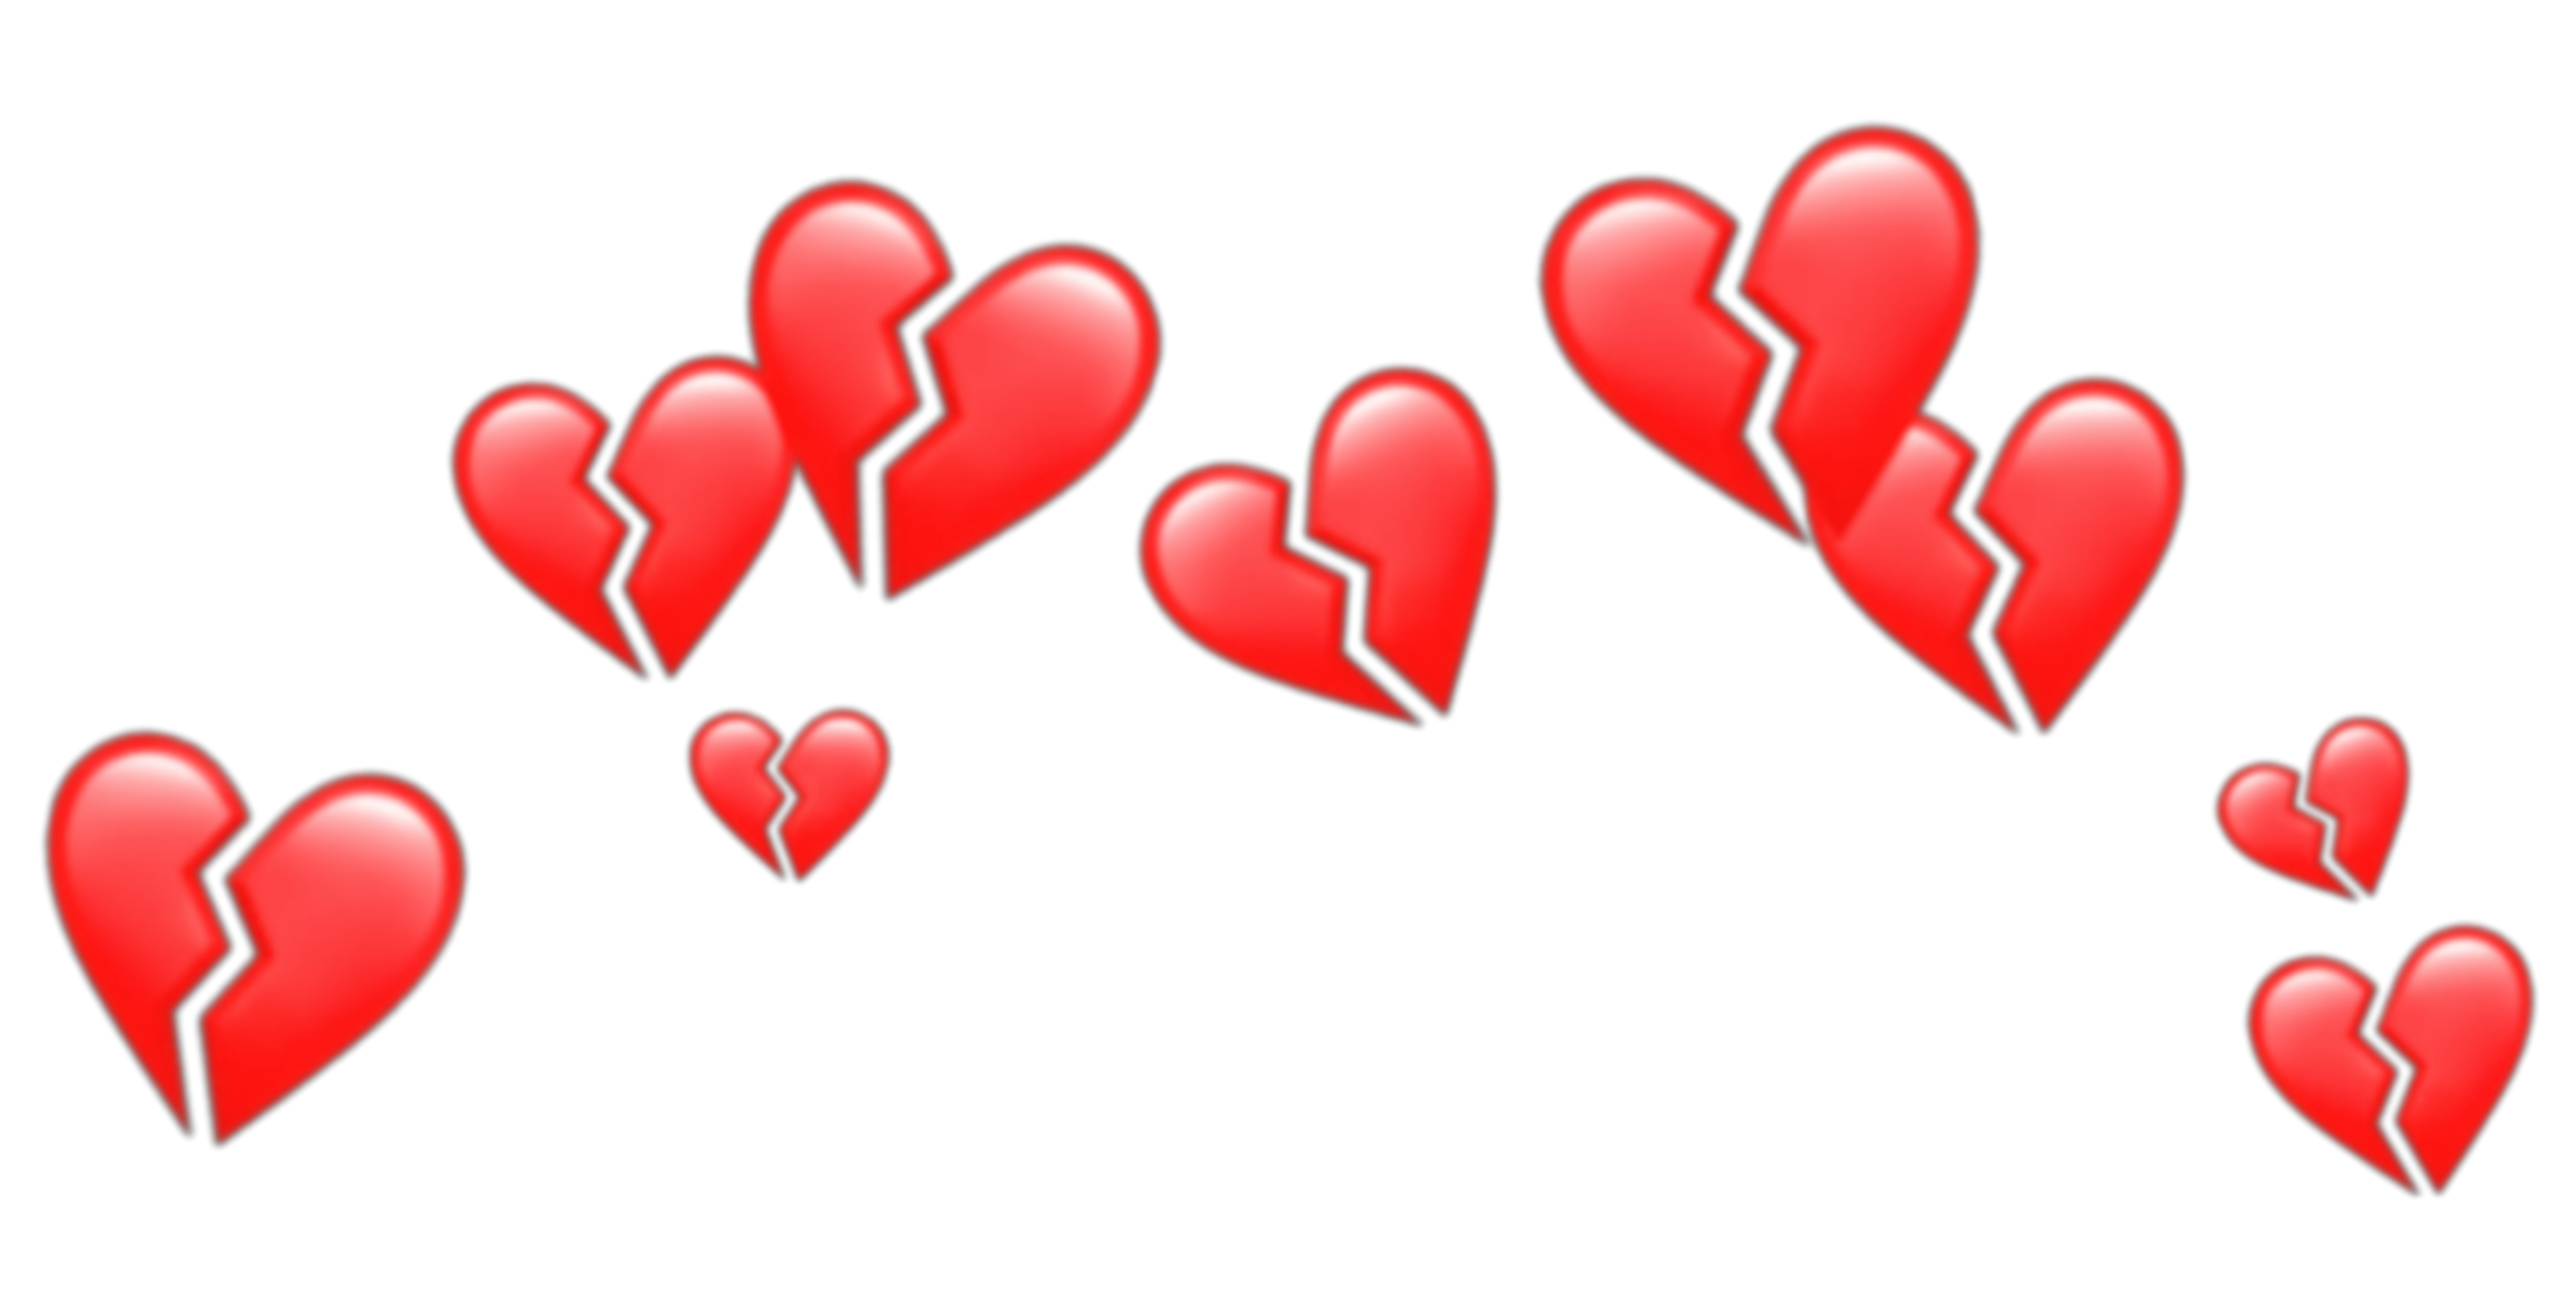 Как сделать анимированные сердечко из сердечек в телеграмме фото 99